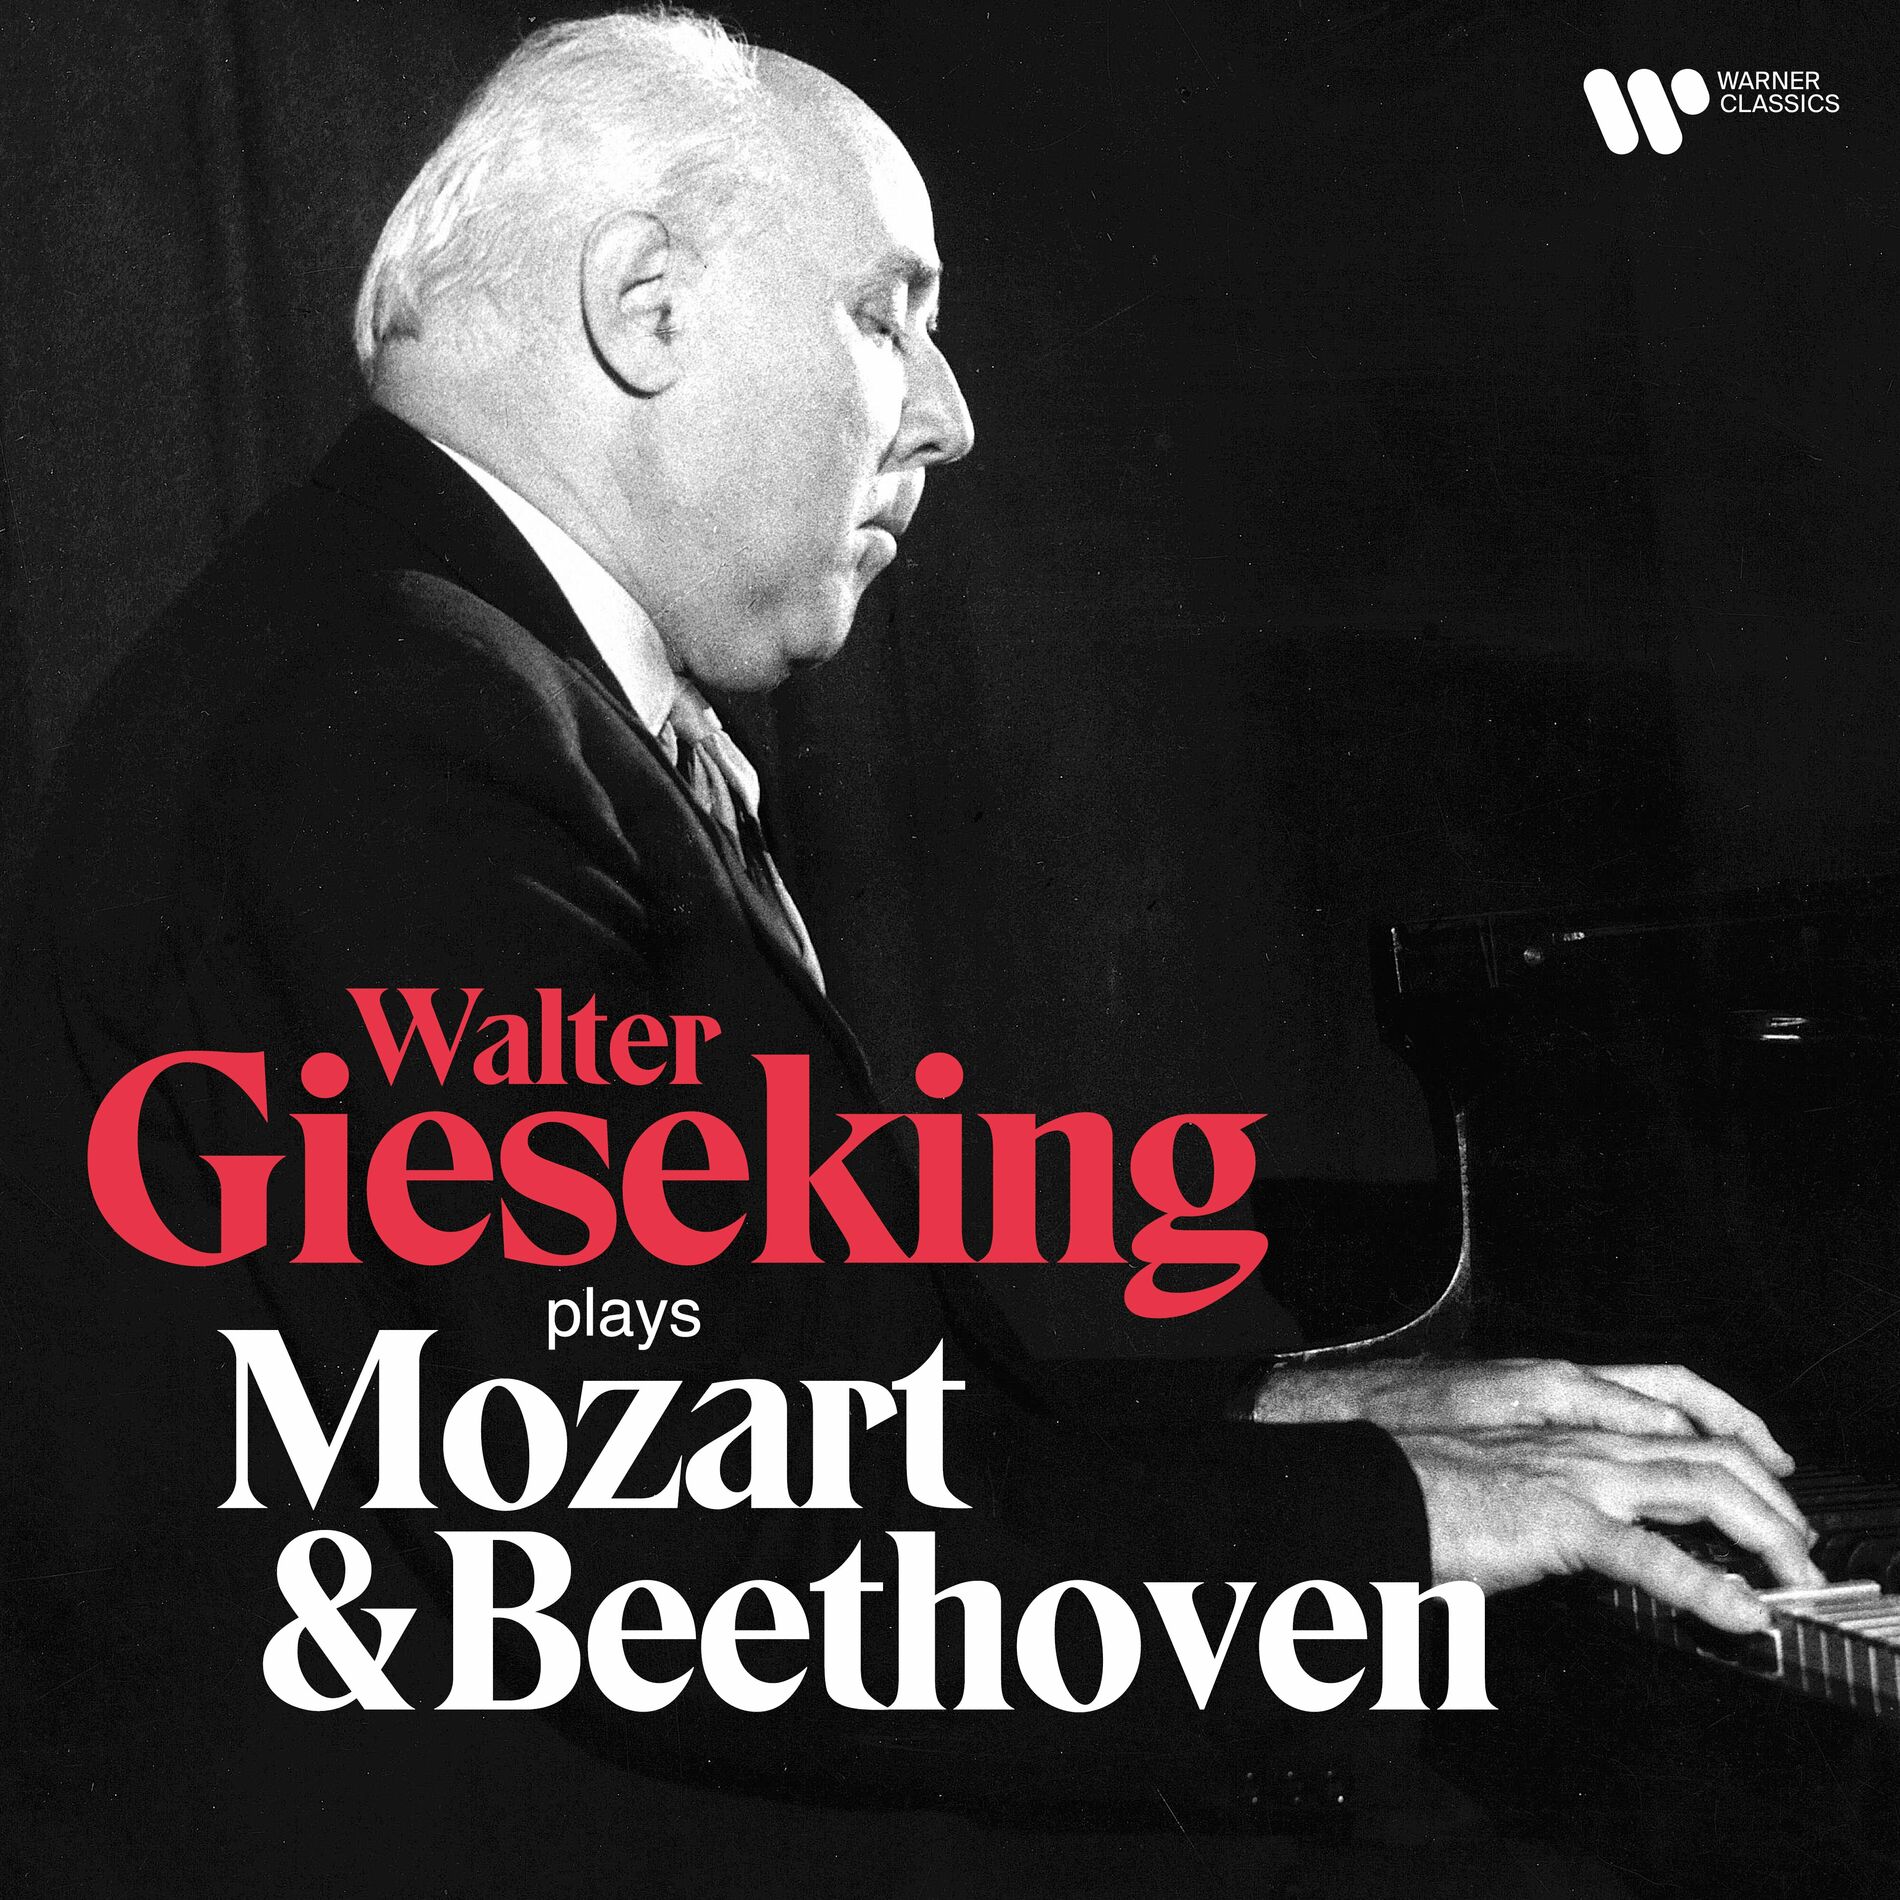 Walter Gieseking: albums